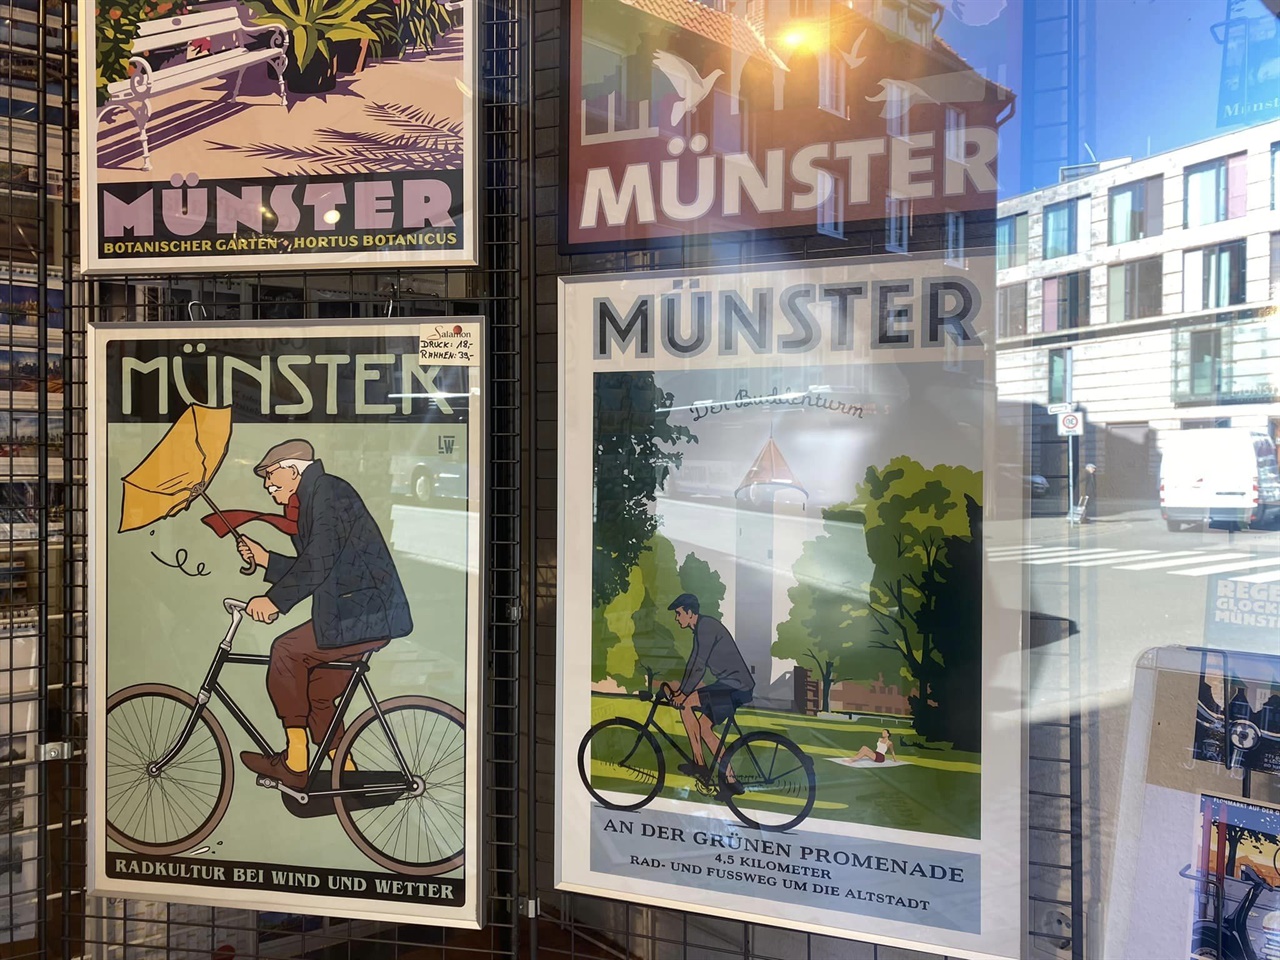 박영운 대표와 정연일 이사가 원정대원이 뮌스터 시청과의 공식일정을 치르고 돌아오는길에 서점에 거려있는 포스터를 찍은 사진이라고 한다. 자전거 도시답게 자전거와 관련한 이야기 거리가 많음이 확인된다.